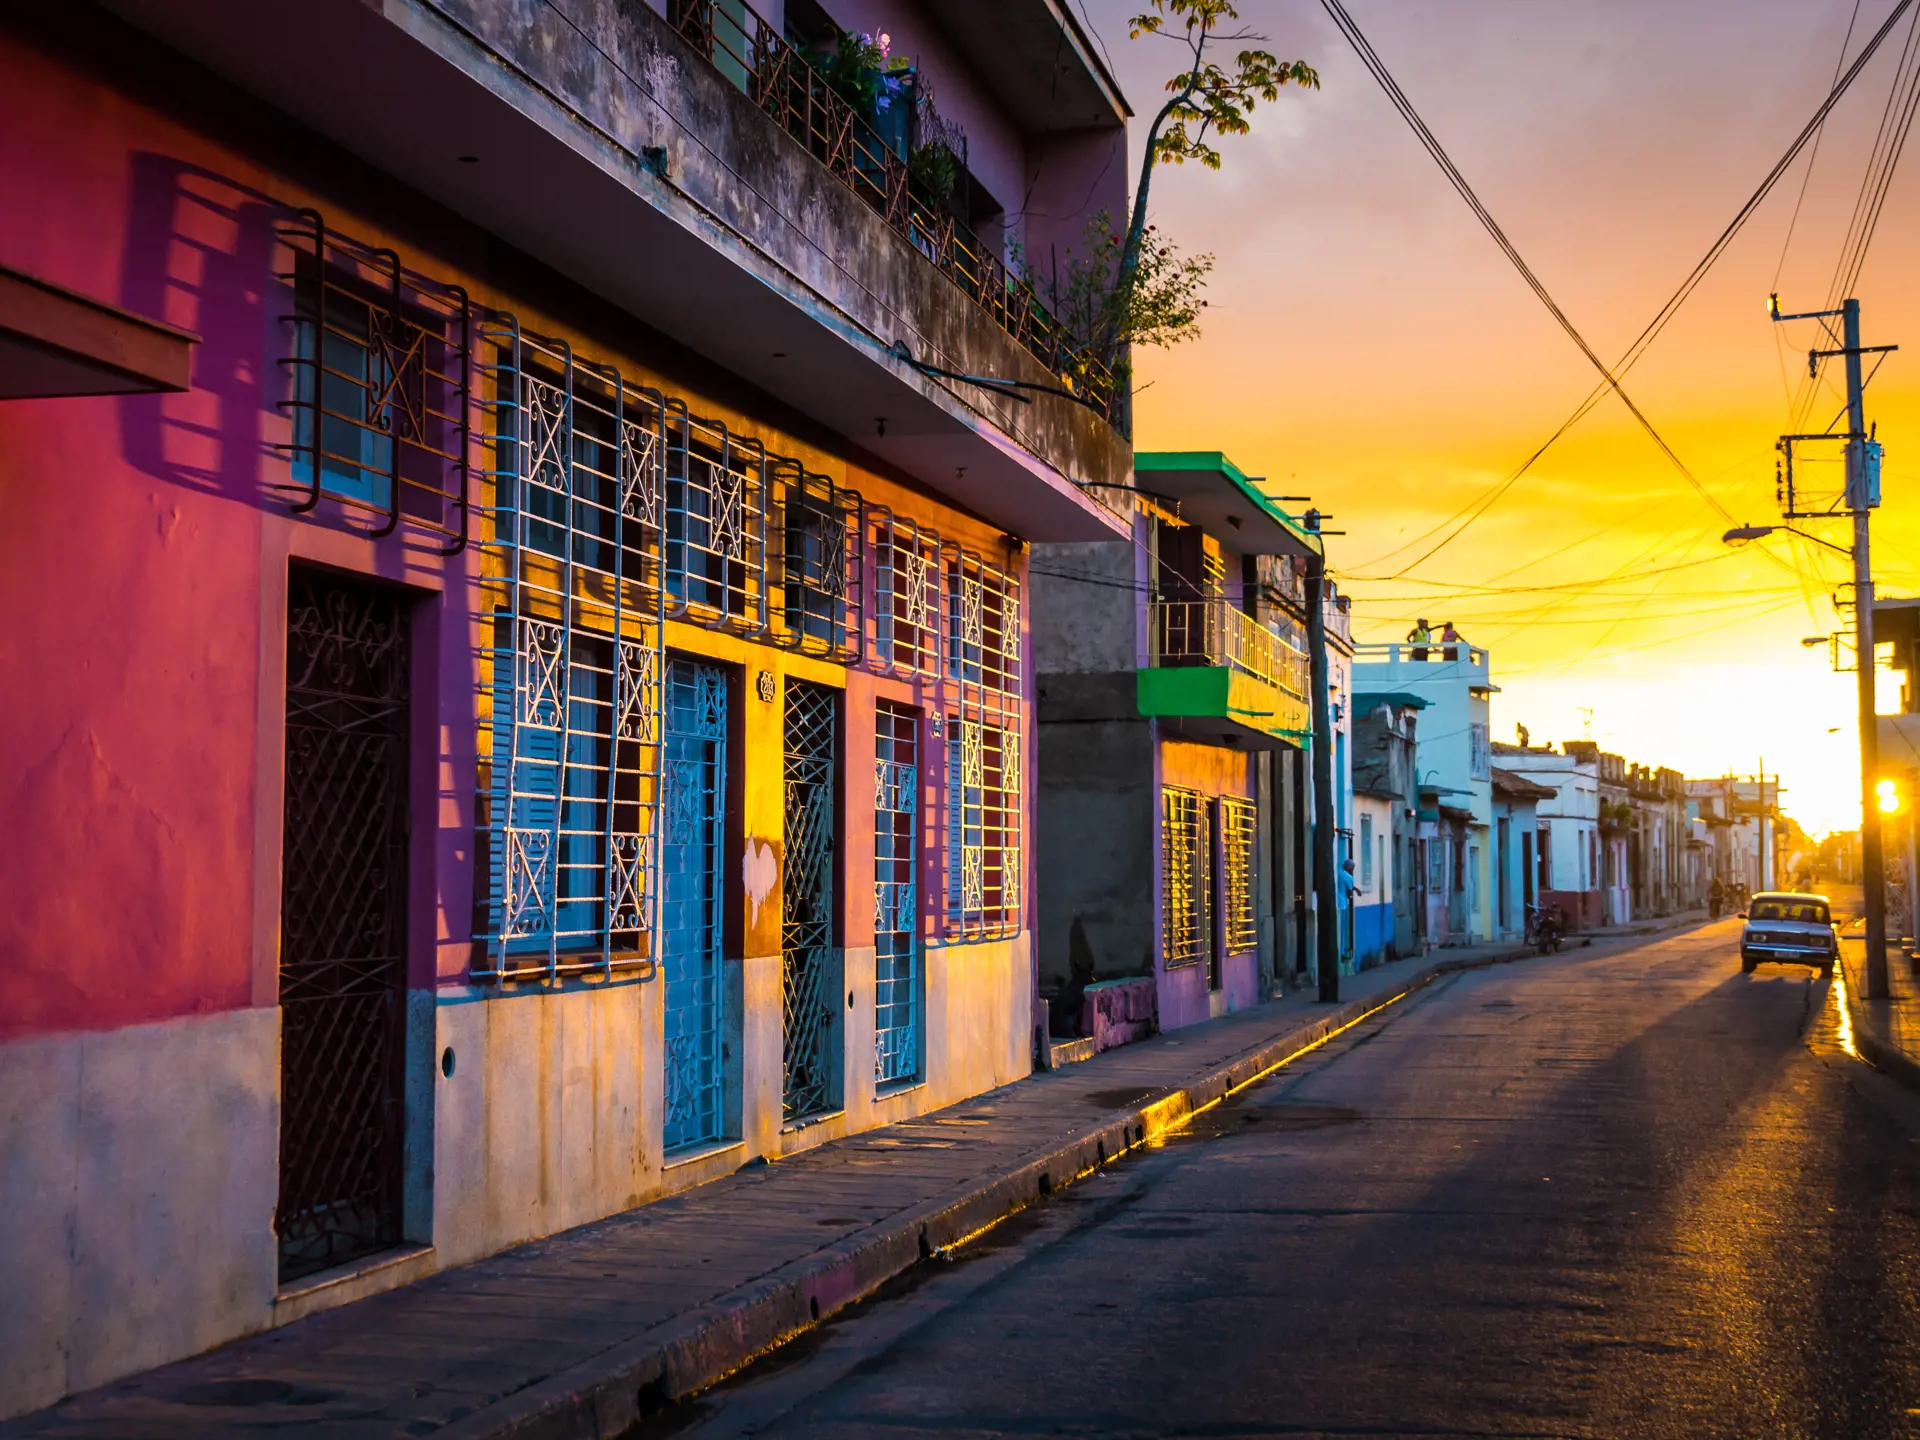 CAMAGÜEY - I besøger blandt andet stemningsfulde Camagüey i det østlige Cuba.